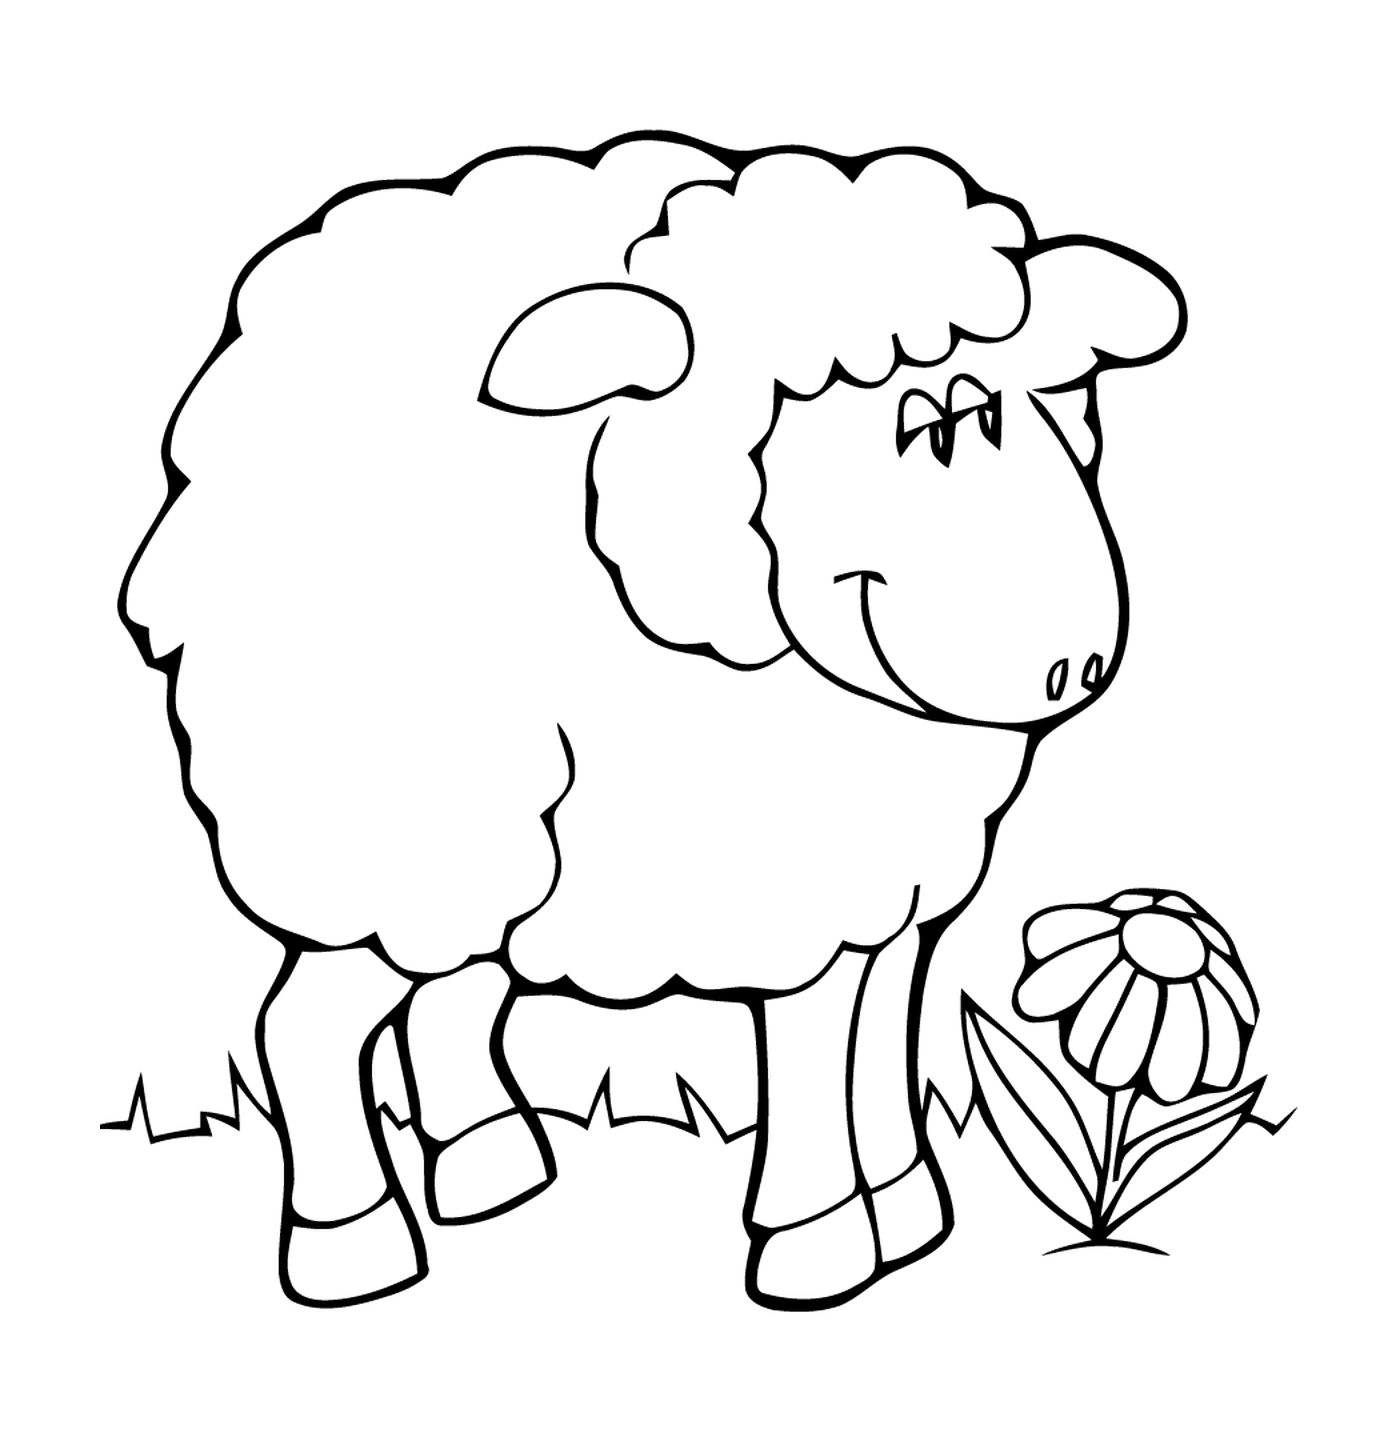   Mouton maternelle repose facilement 